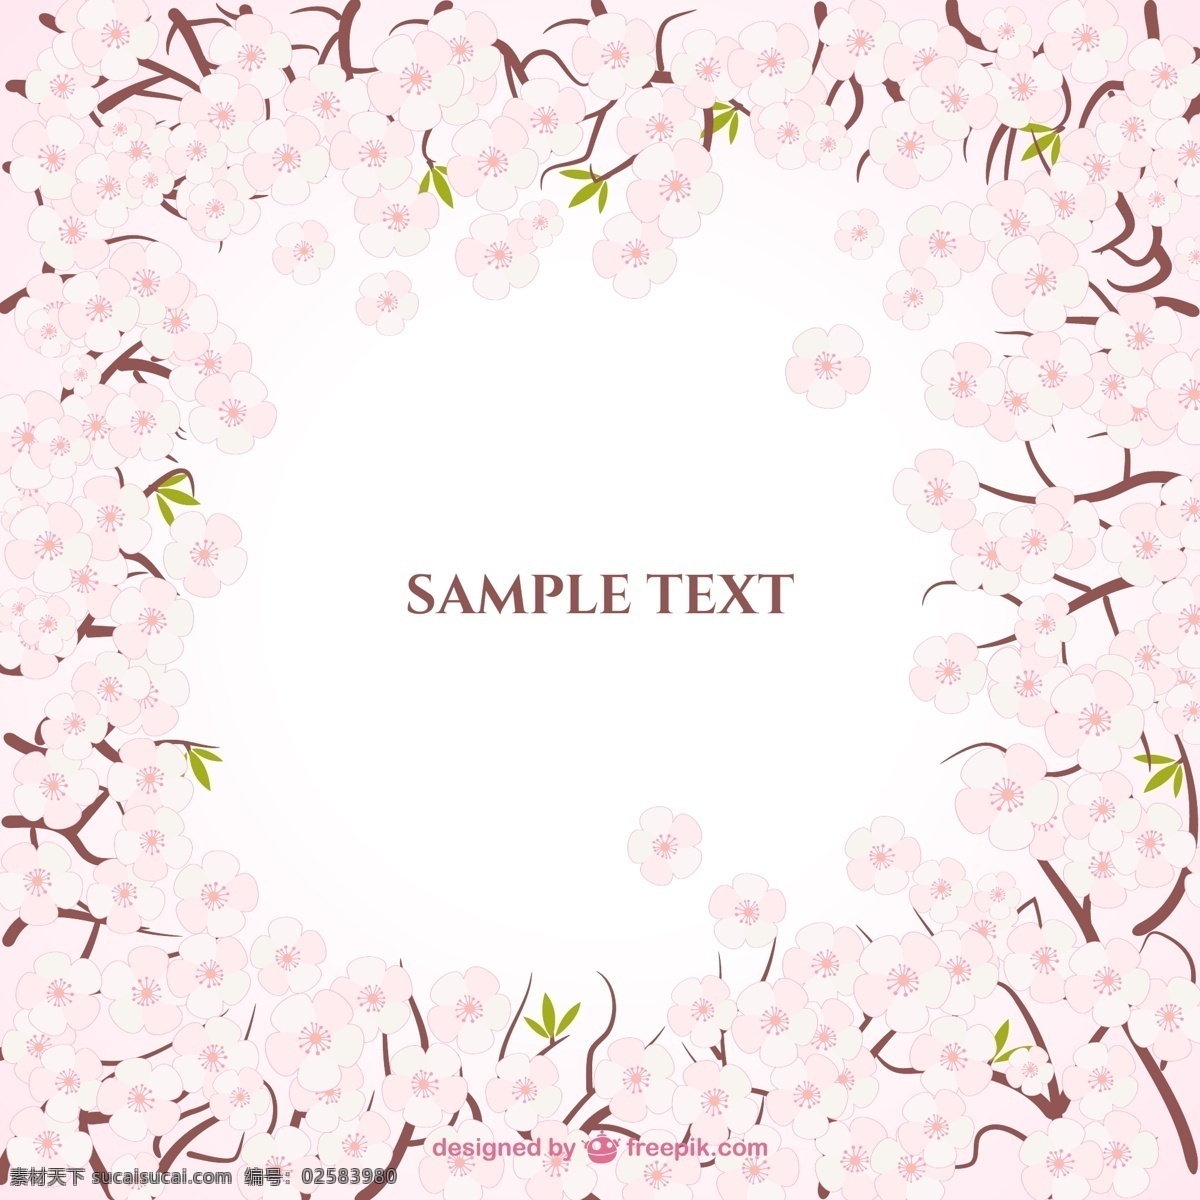 樱花相框 画框 鲜花 边境 粉红色 日本樱花 开花 日本 花卉 框架 樱桃 春天 边框 绽放 图标 高清 源文件